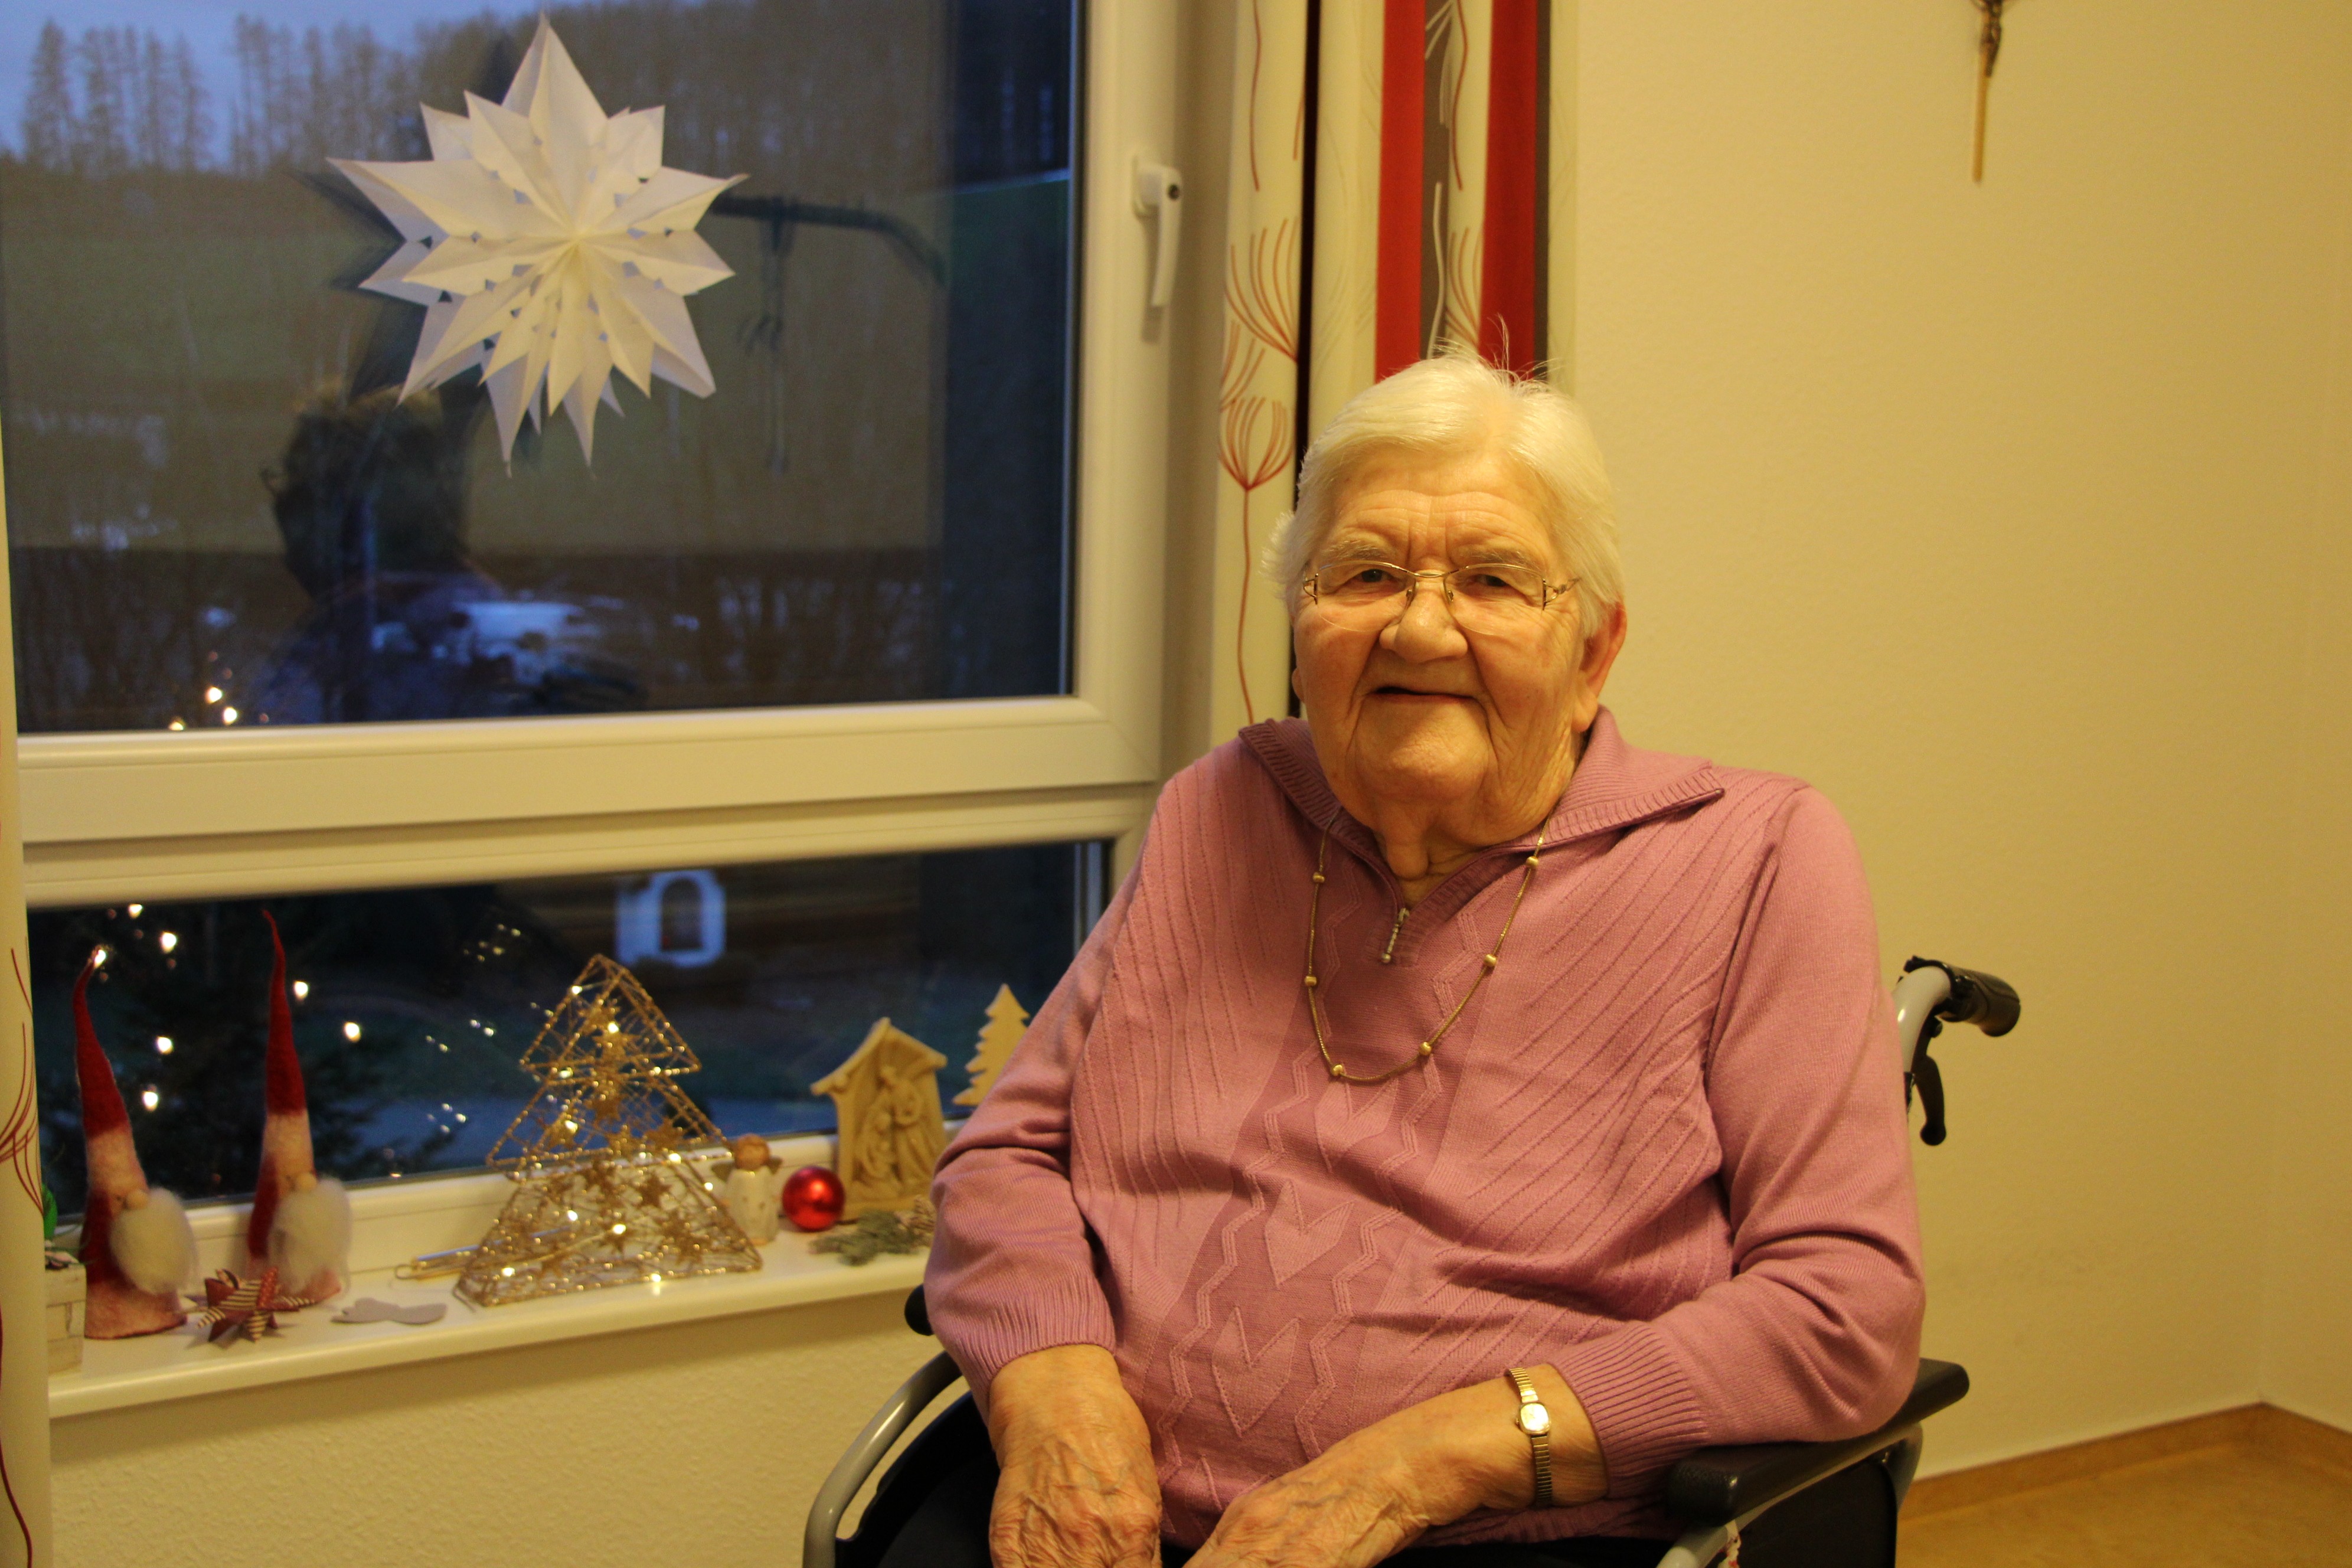 Weihnachten - wie war das früher? Das hat LokalPlus-Volontärin Lorena Klein ihre Urgroßmutter Maria Ochel gefragt. von Lorena Klein